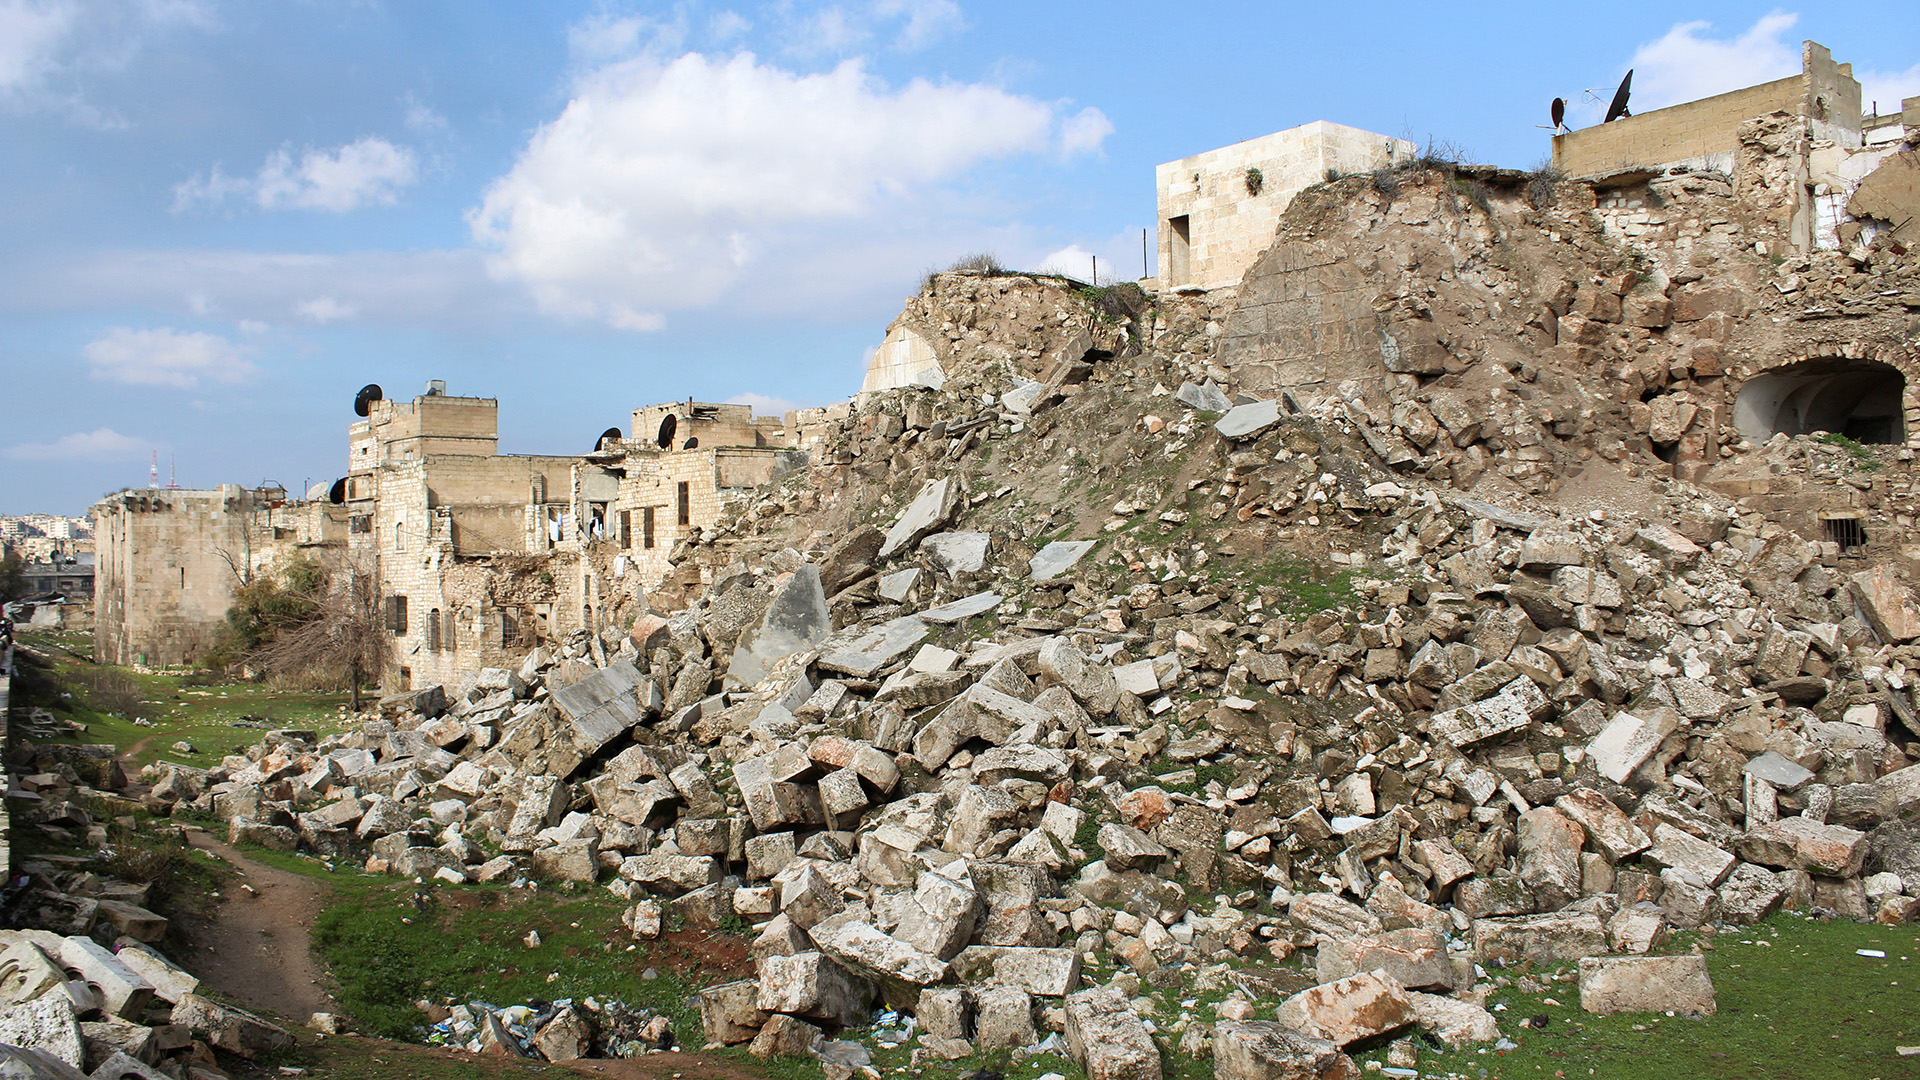 Blick auf Trümmer in der Nähe der alten Zitadelle von Aleppo. | REUTERS